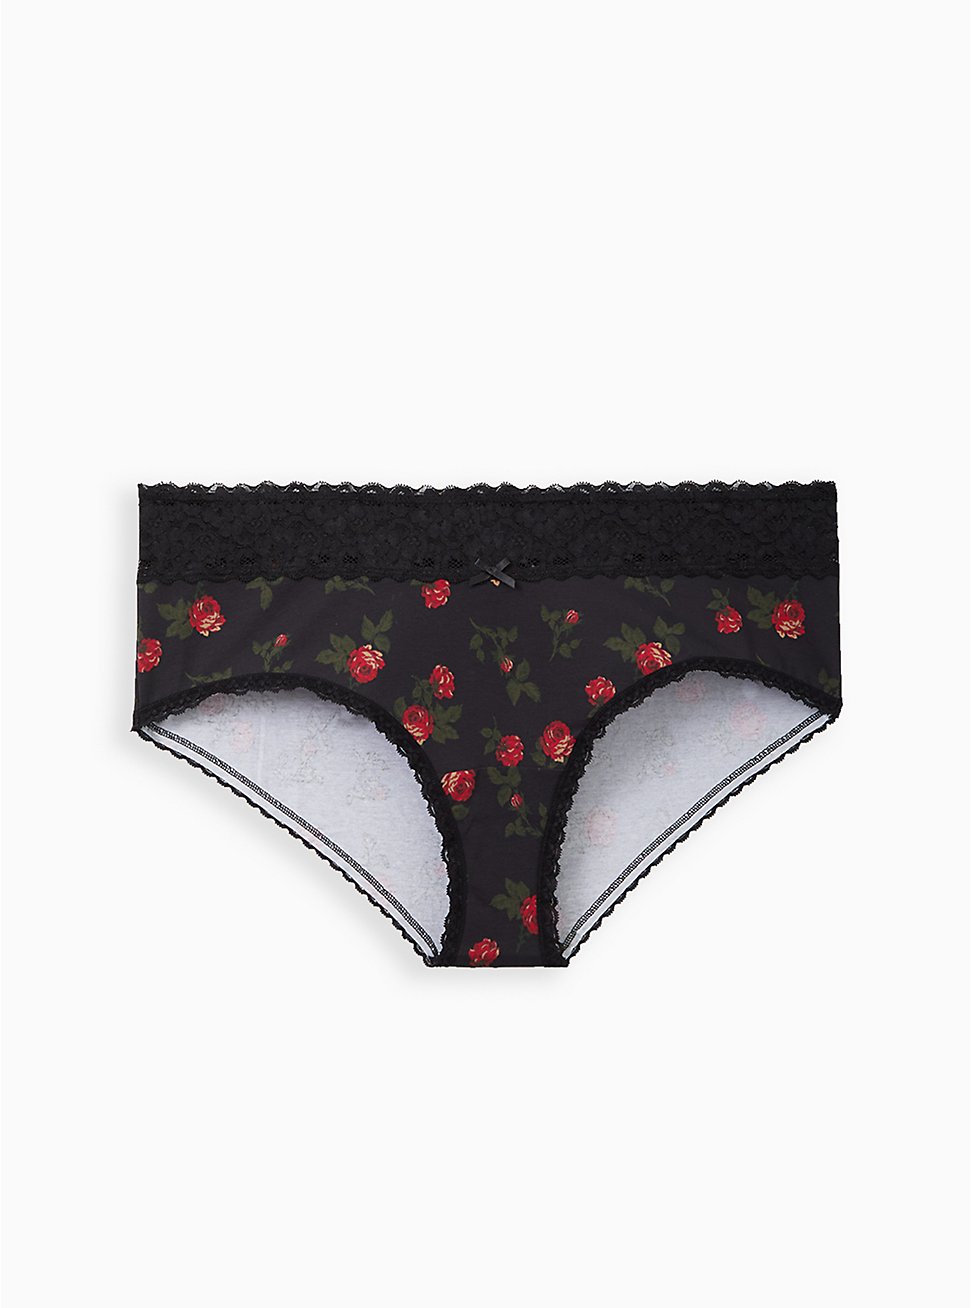 Plus Size Wide Lace Trim Cheeky Panty - Cotton Rose Black, , hi-res